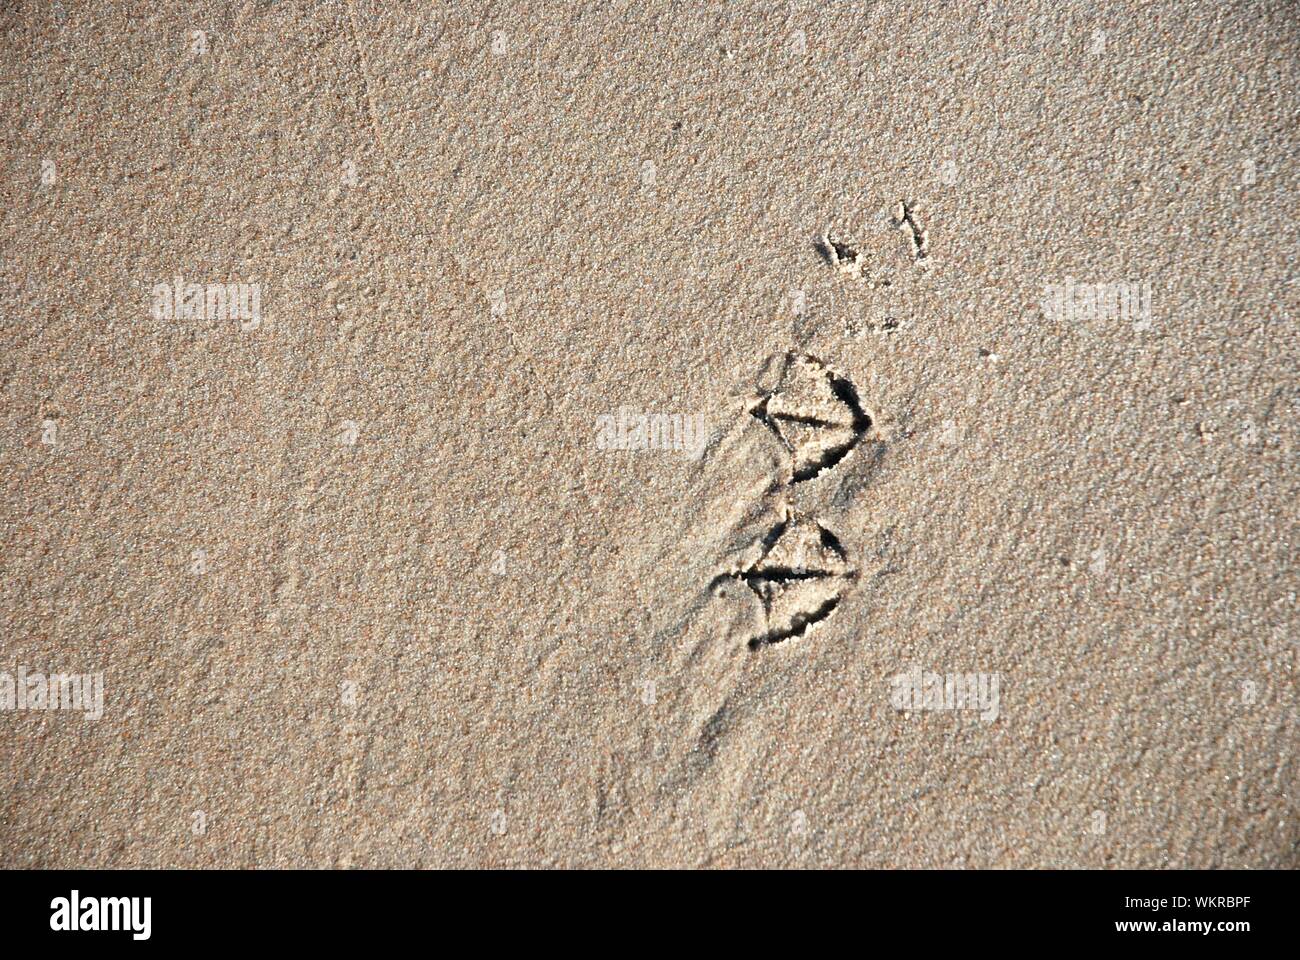 Bird footprint hi-res stock photography and images - Alamy